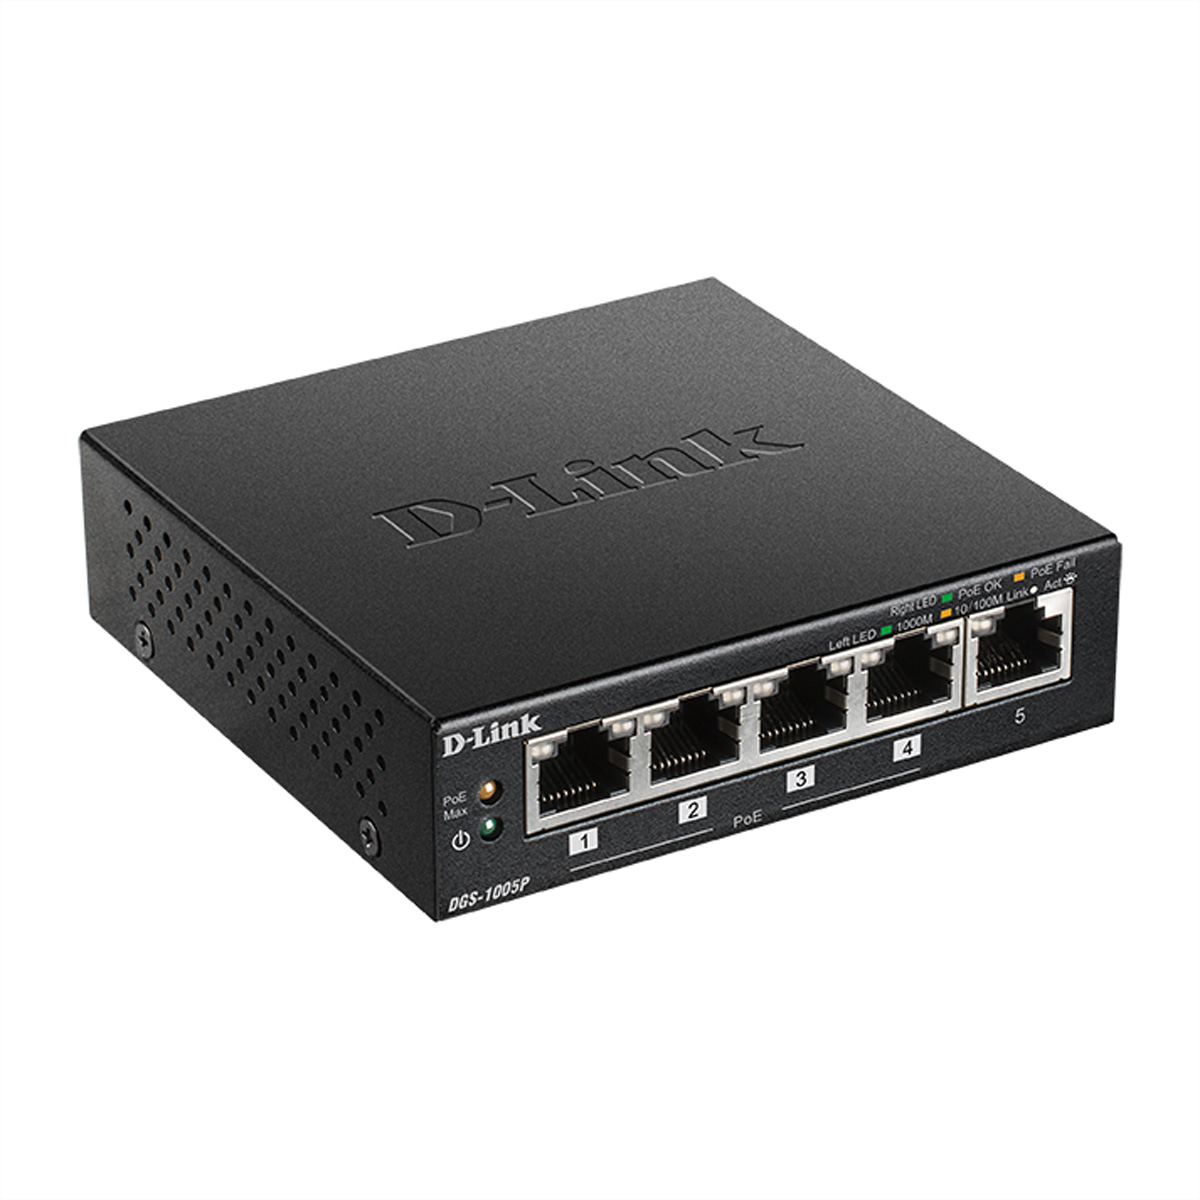 D-Link DGS-1005P/E 5-Port PoE+ Switch Gigabit 4 PoE+ Ports 60W